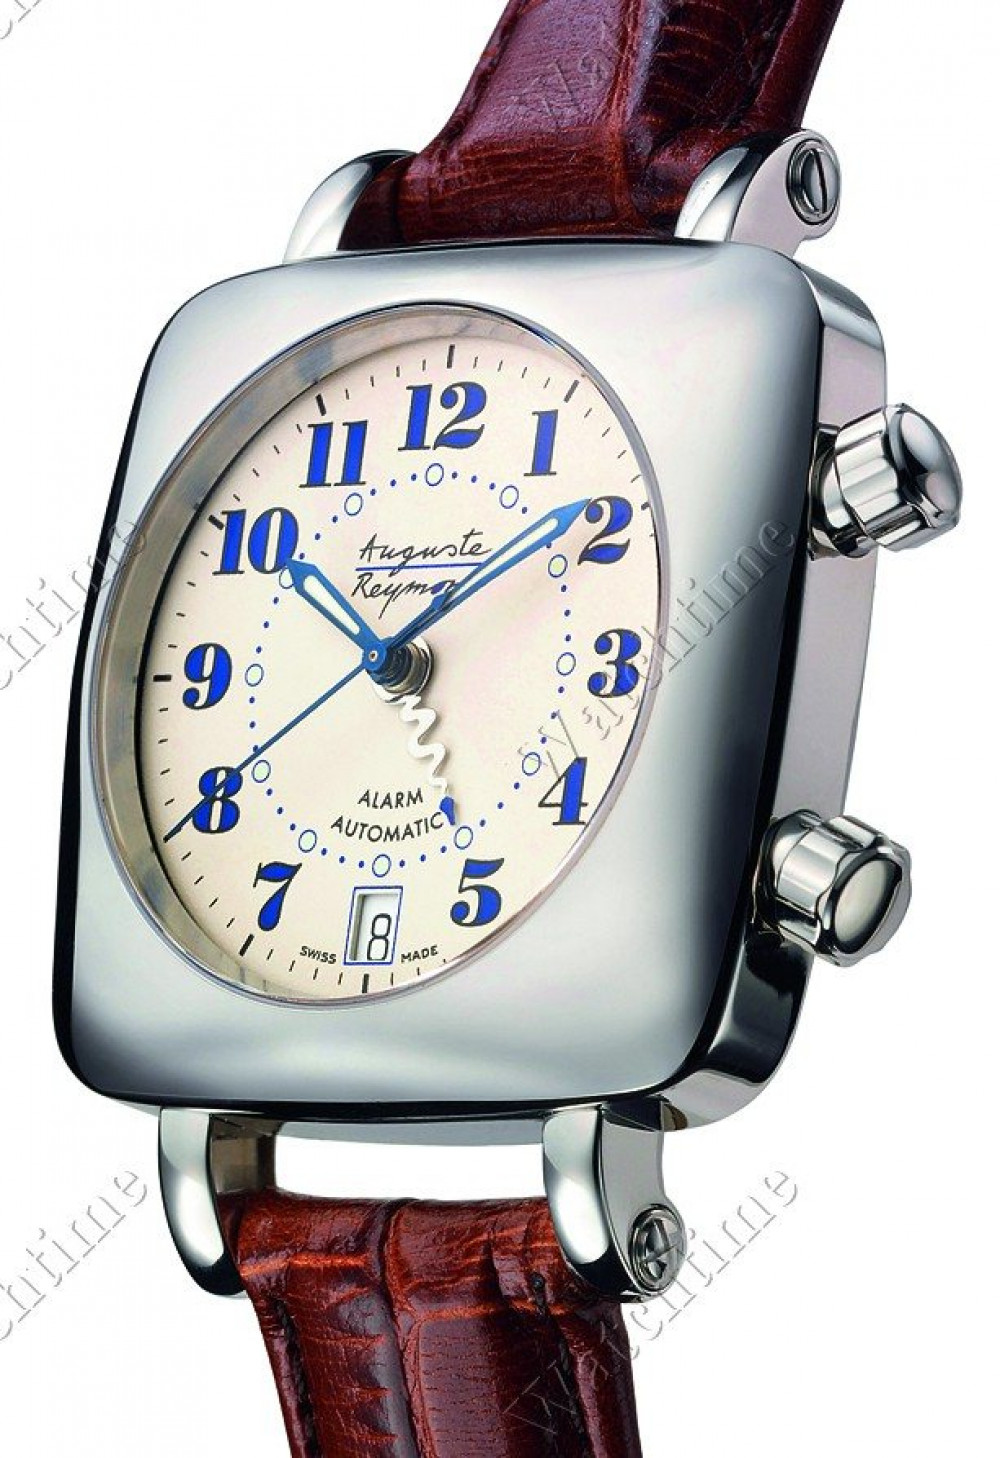 Zegarek firmy Auguste Reymond, model Rumba Alarm